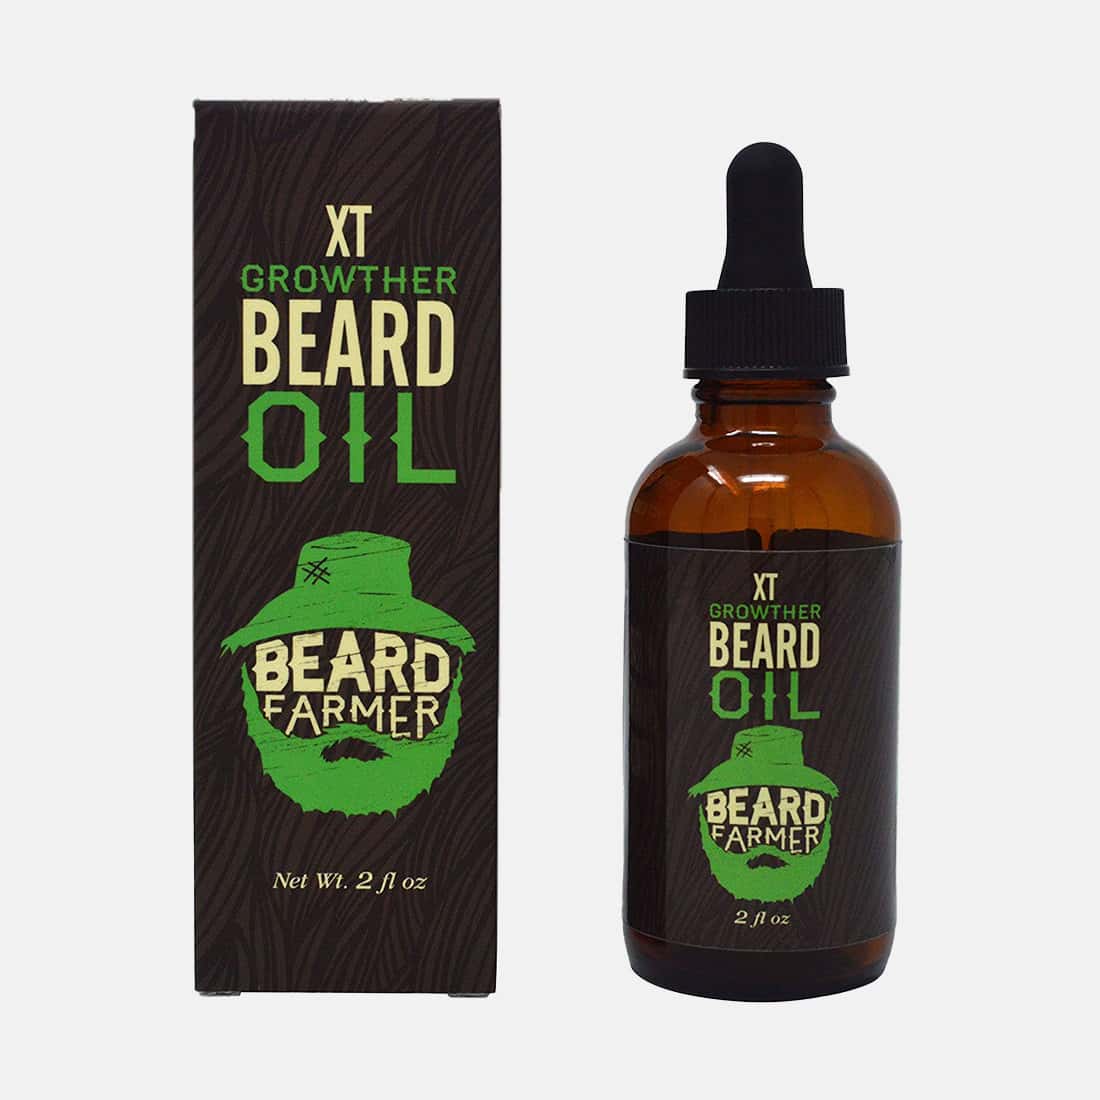 Beard Farmer Growthier Oil XT - All-Natural Beard Growth Oil